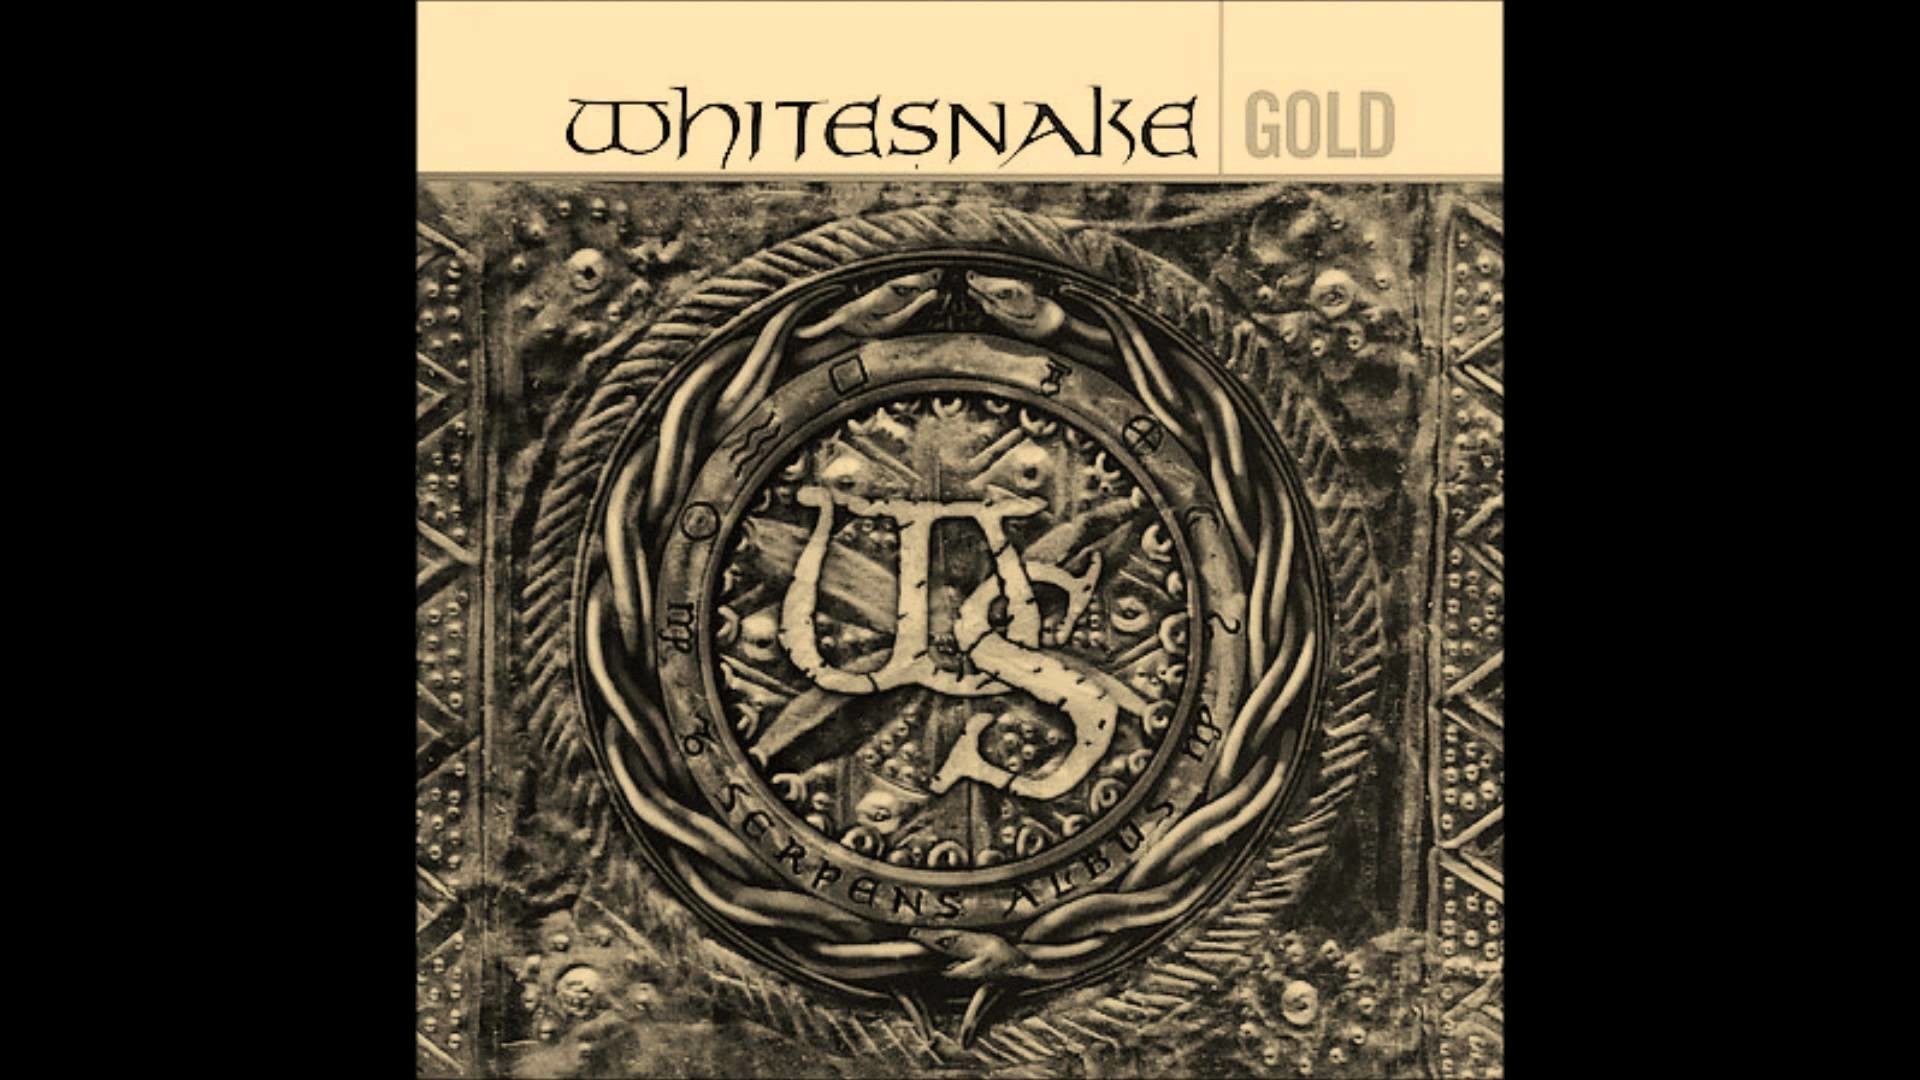 1920x1080 Whitesnake - Last Note of Freedom (Remasterizada Whitesnake Gold)